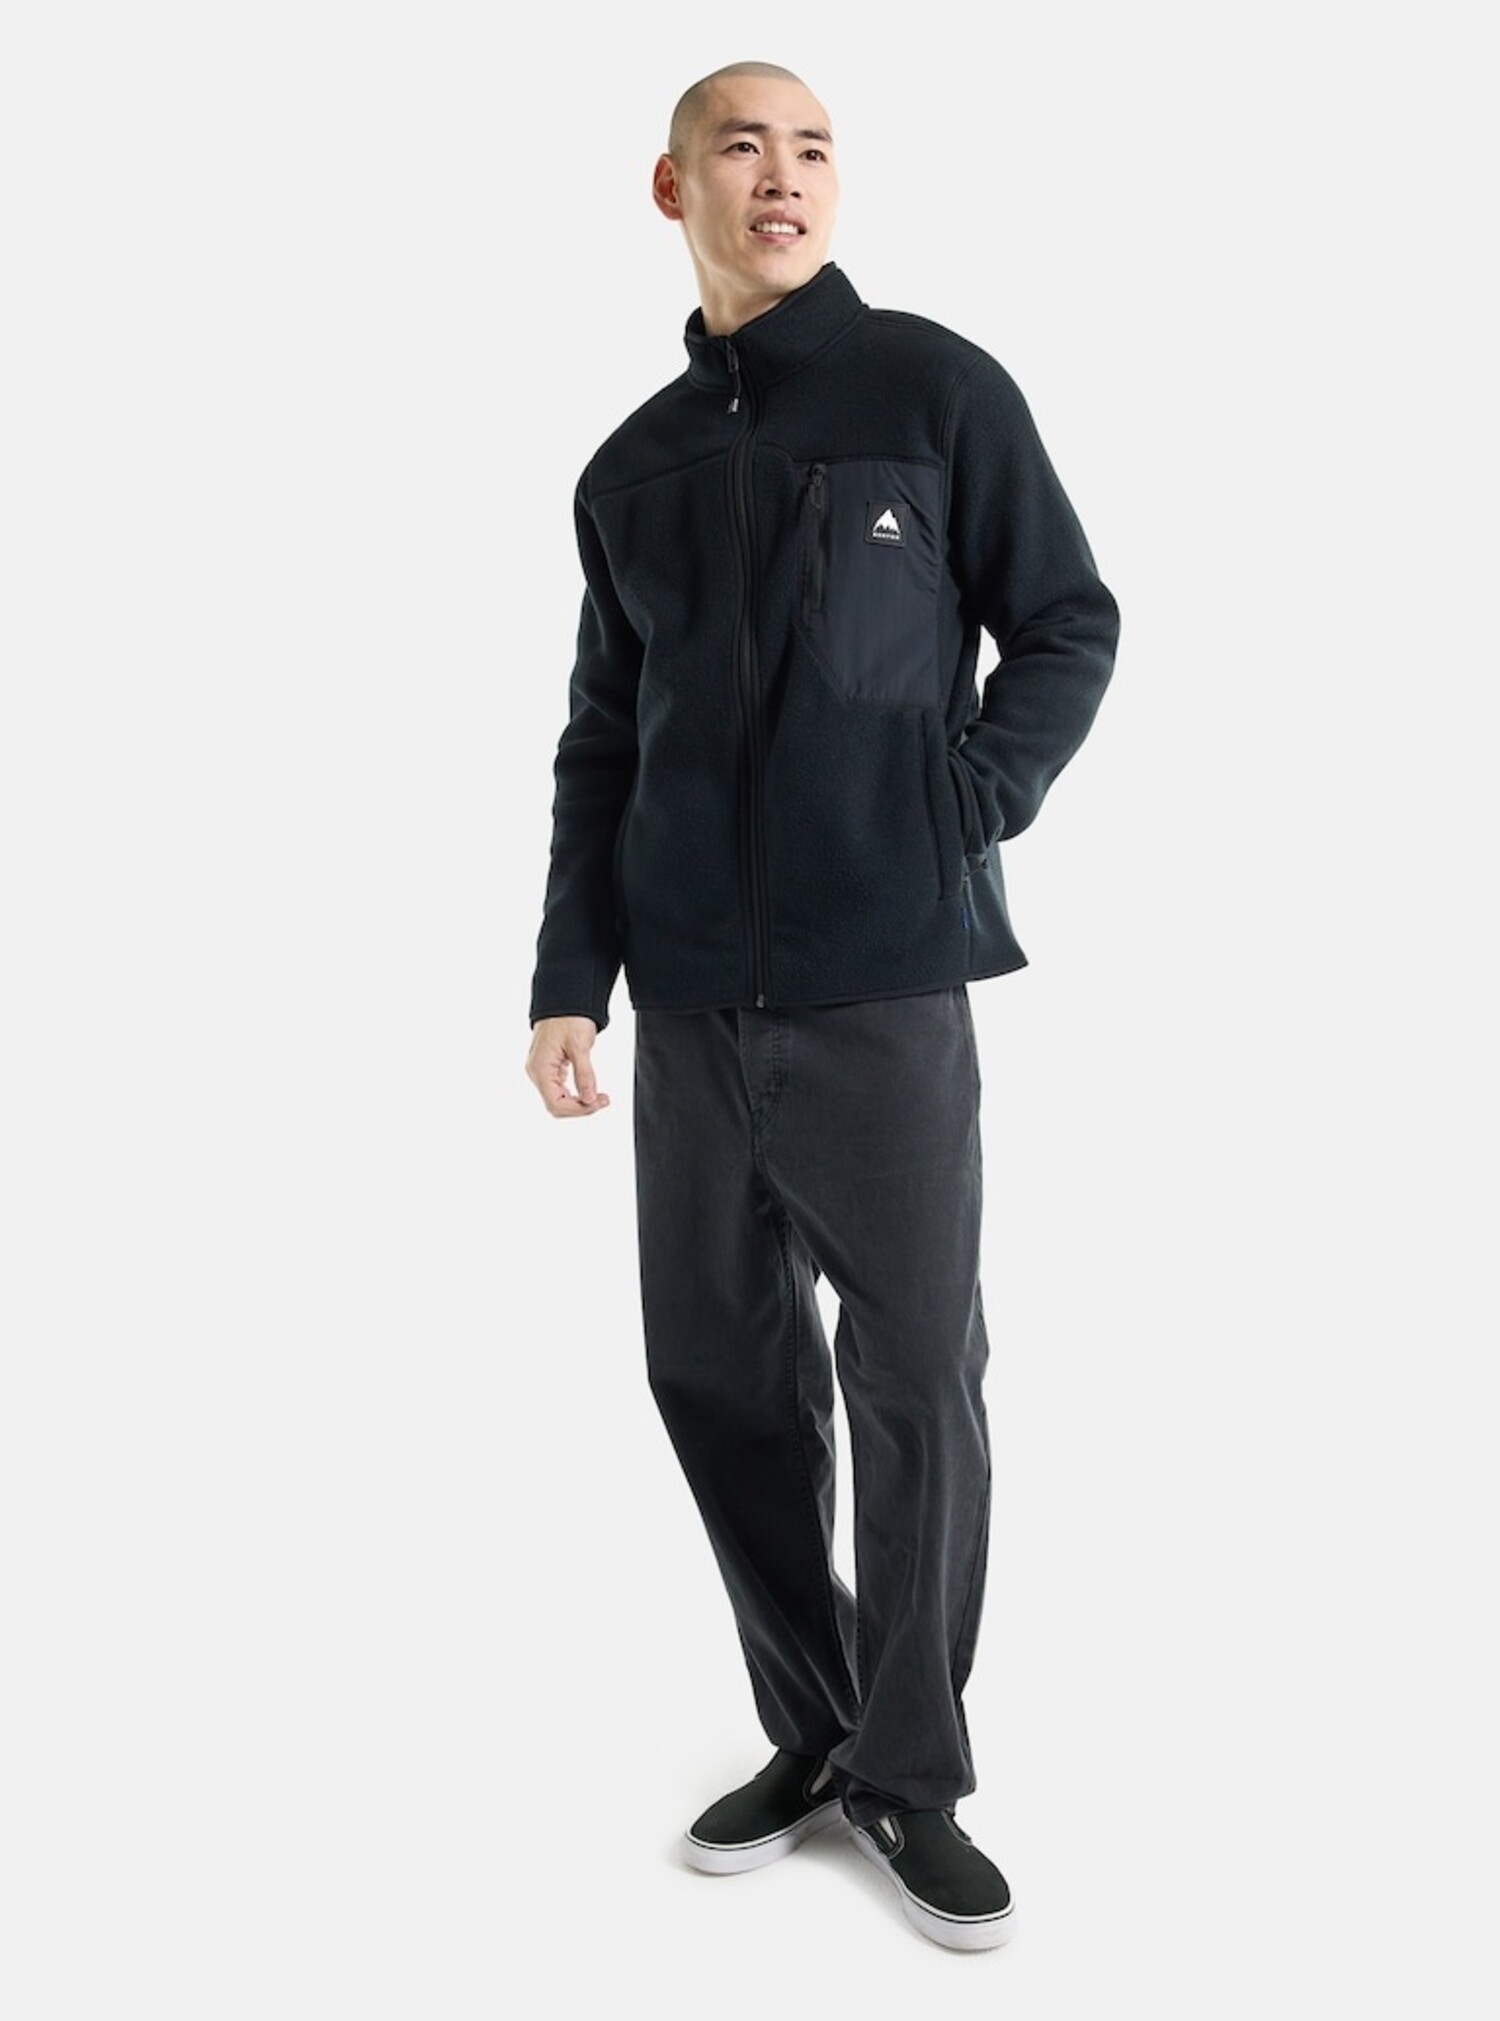 Zip Front Fleece Jacket-Cotton /Spandex Blend, Black, X-Large : :  Clothing, Shoes & Accessories